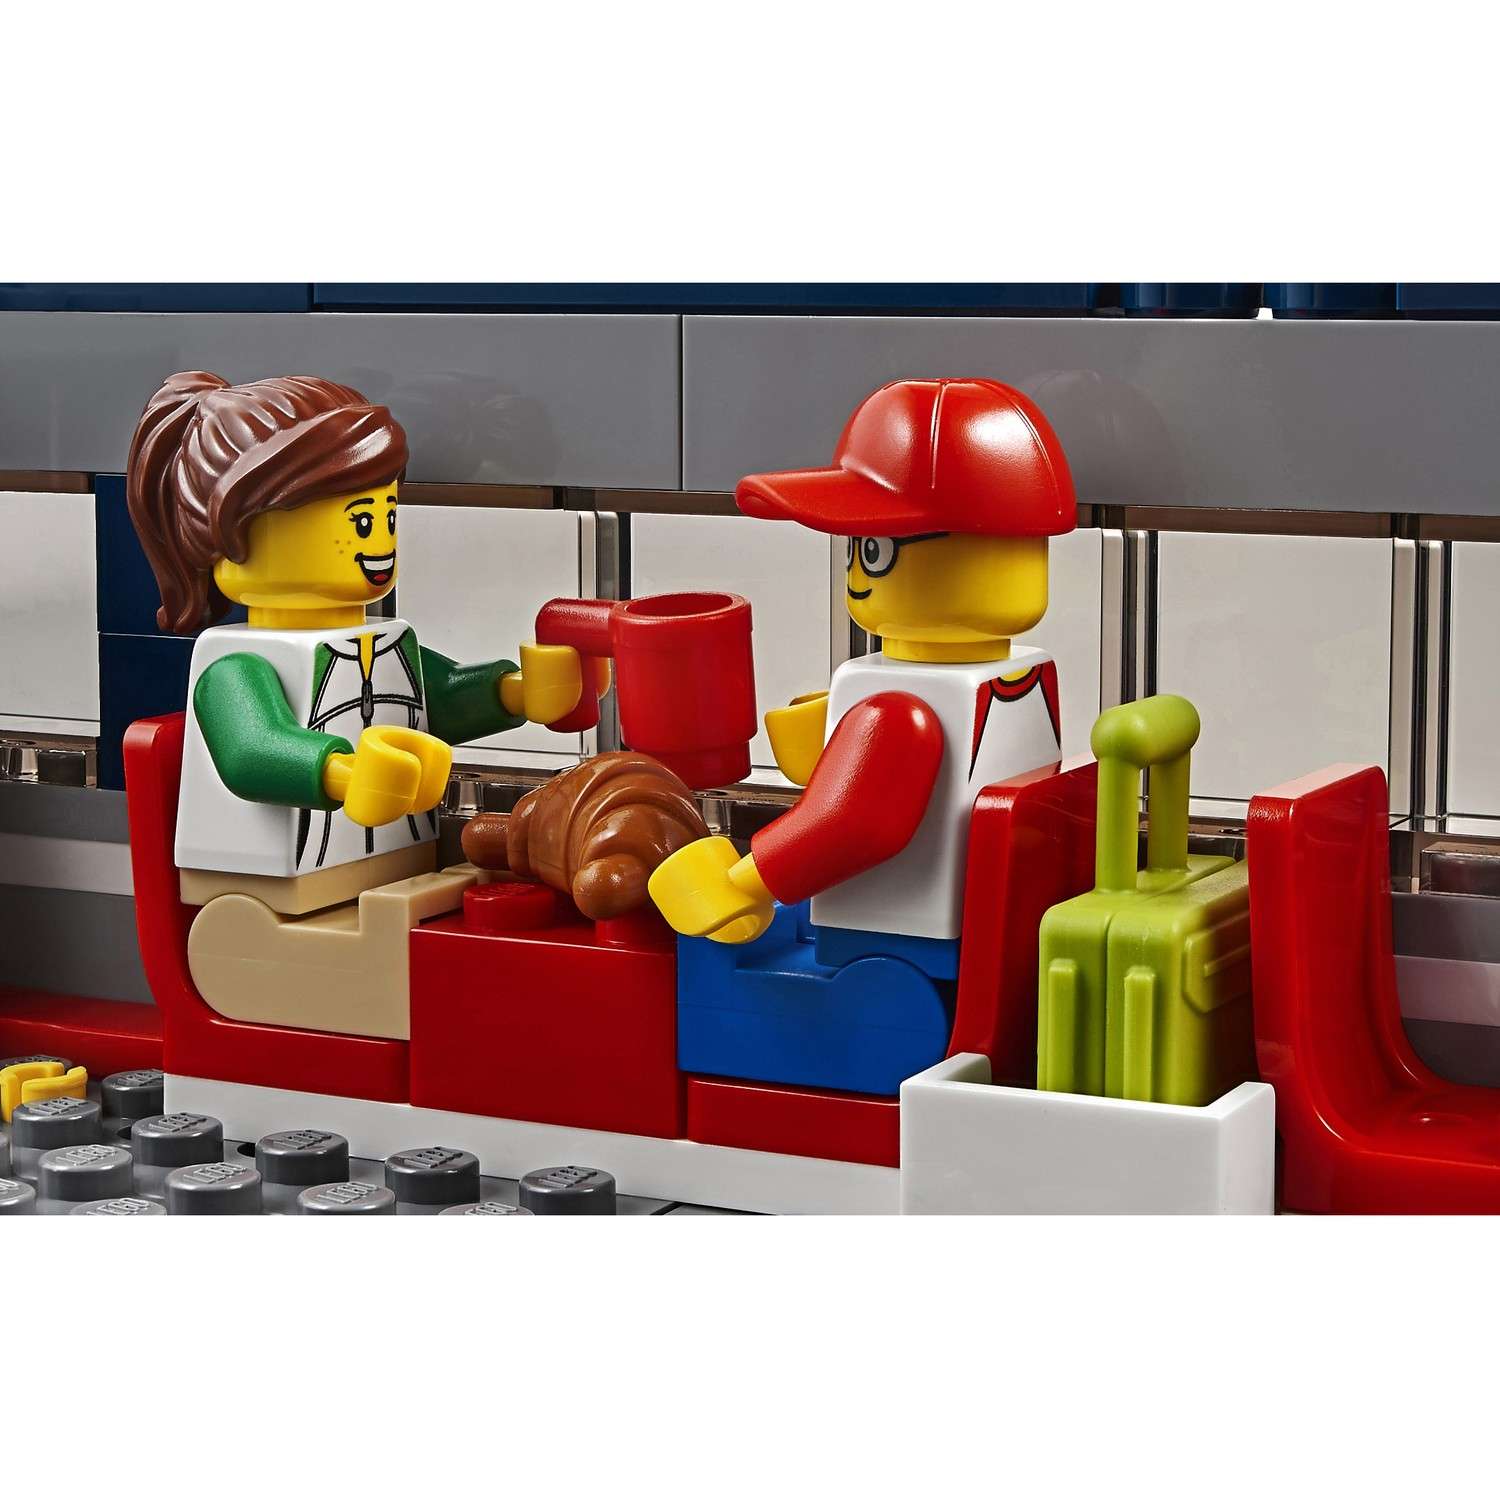 Конструктор LEGO City Trains Пассажирский поезд 60197 - фото 12